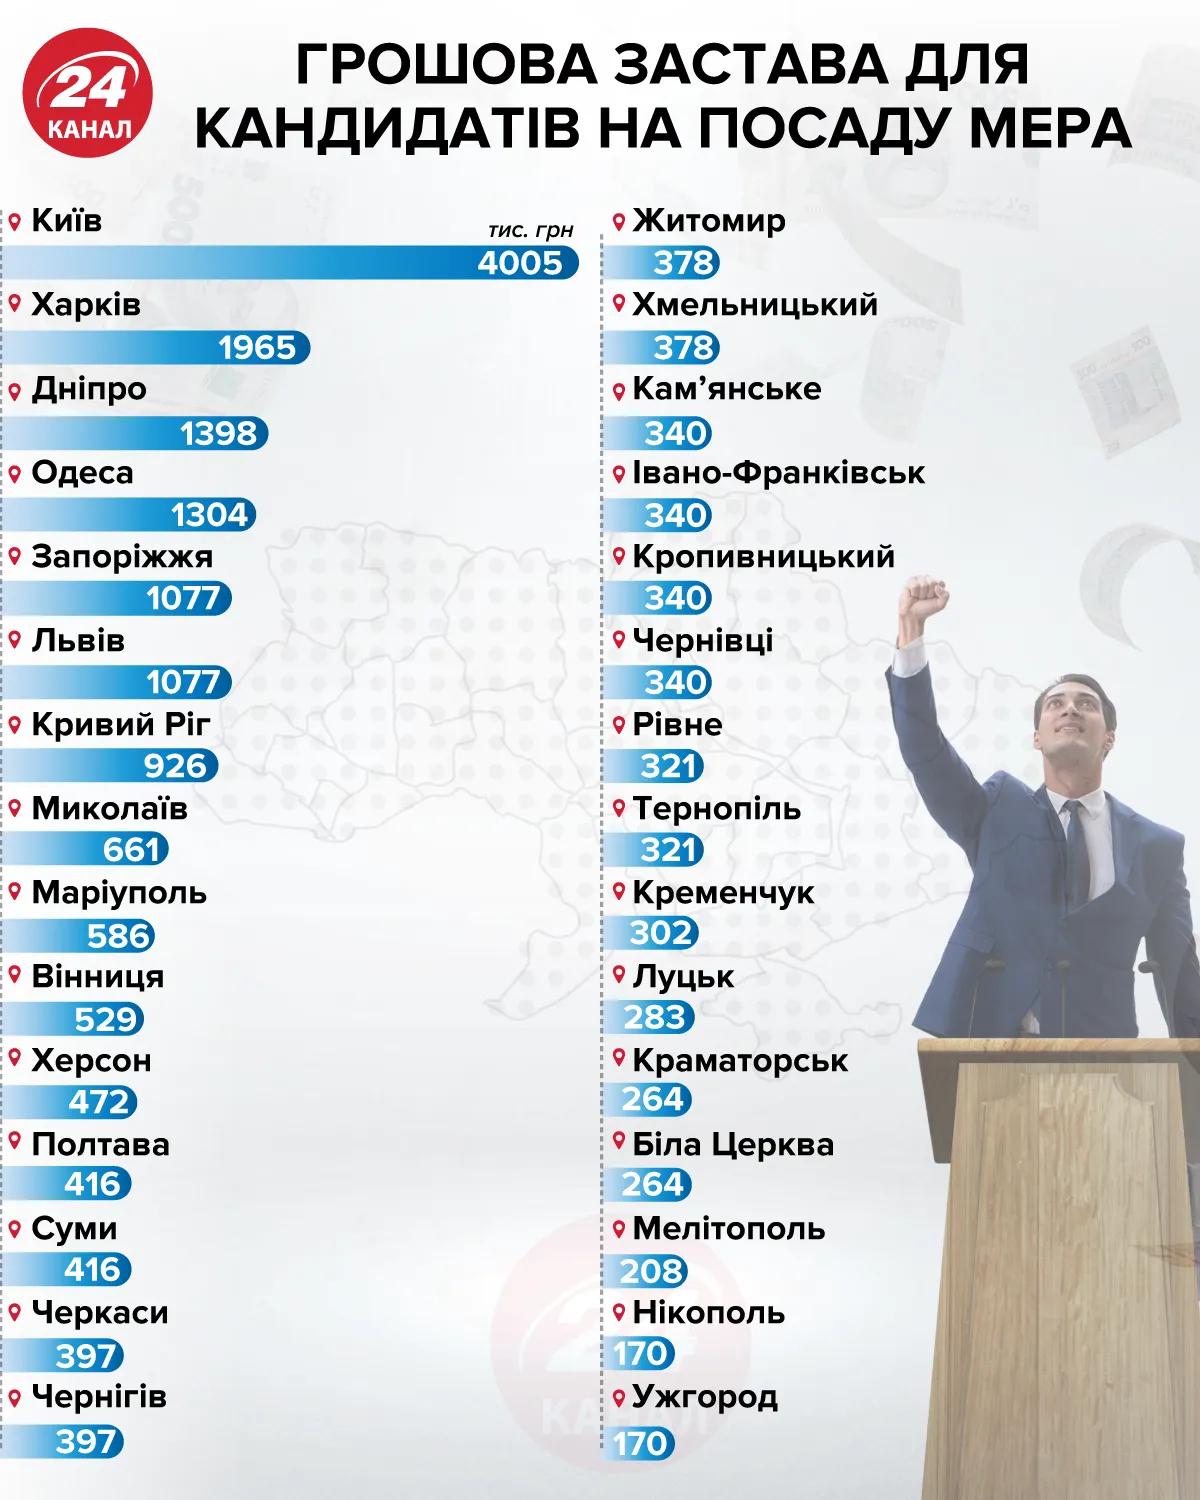 Грошова застава для кандидатів на посаду мера інфографіка 24 канал